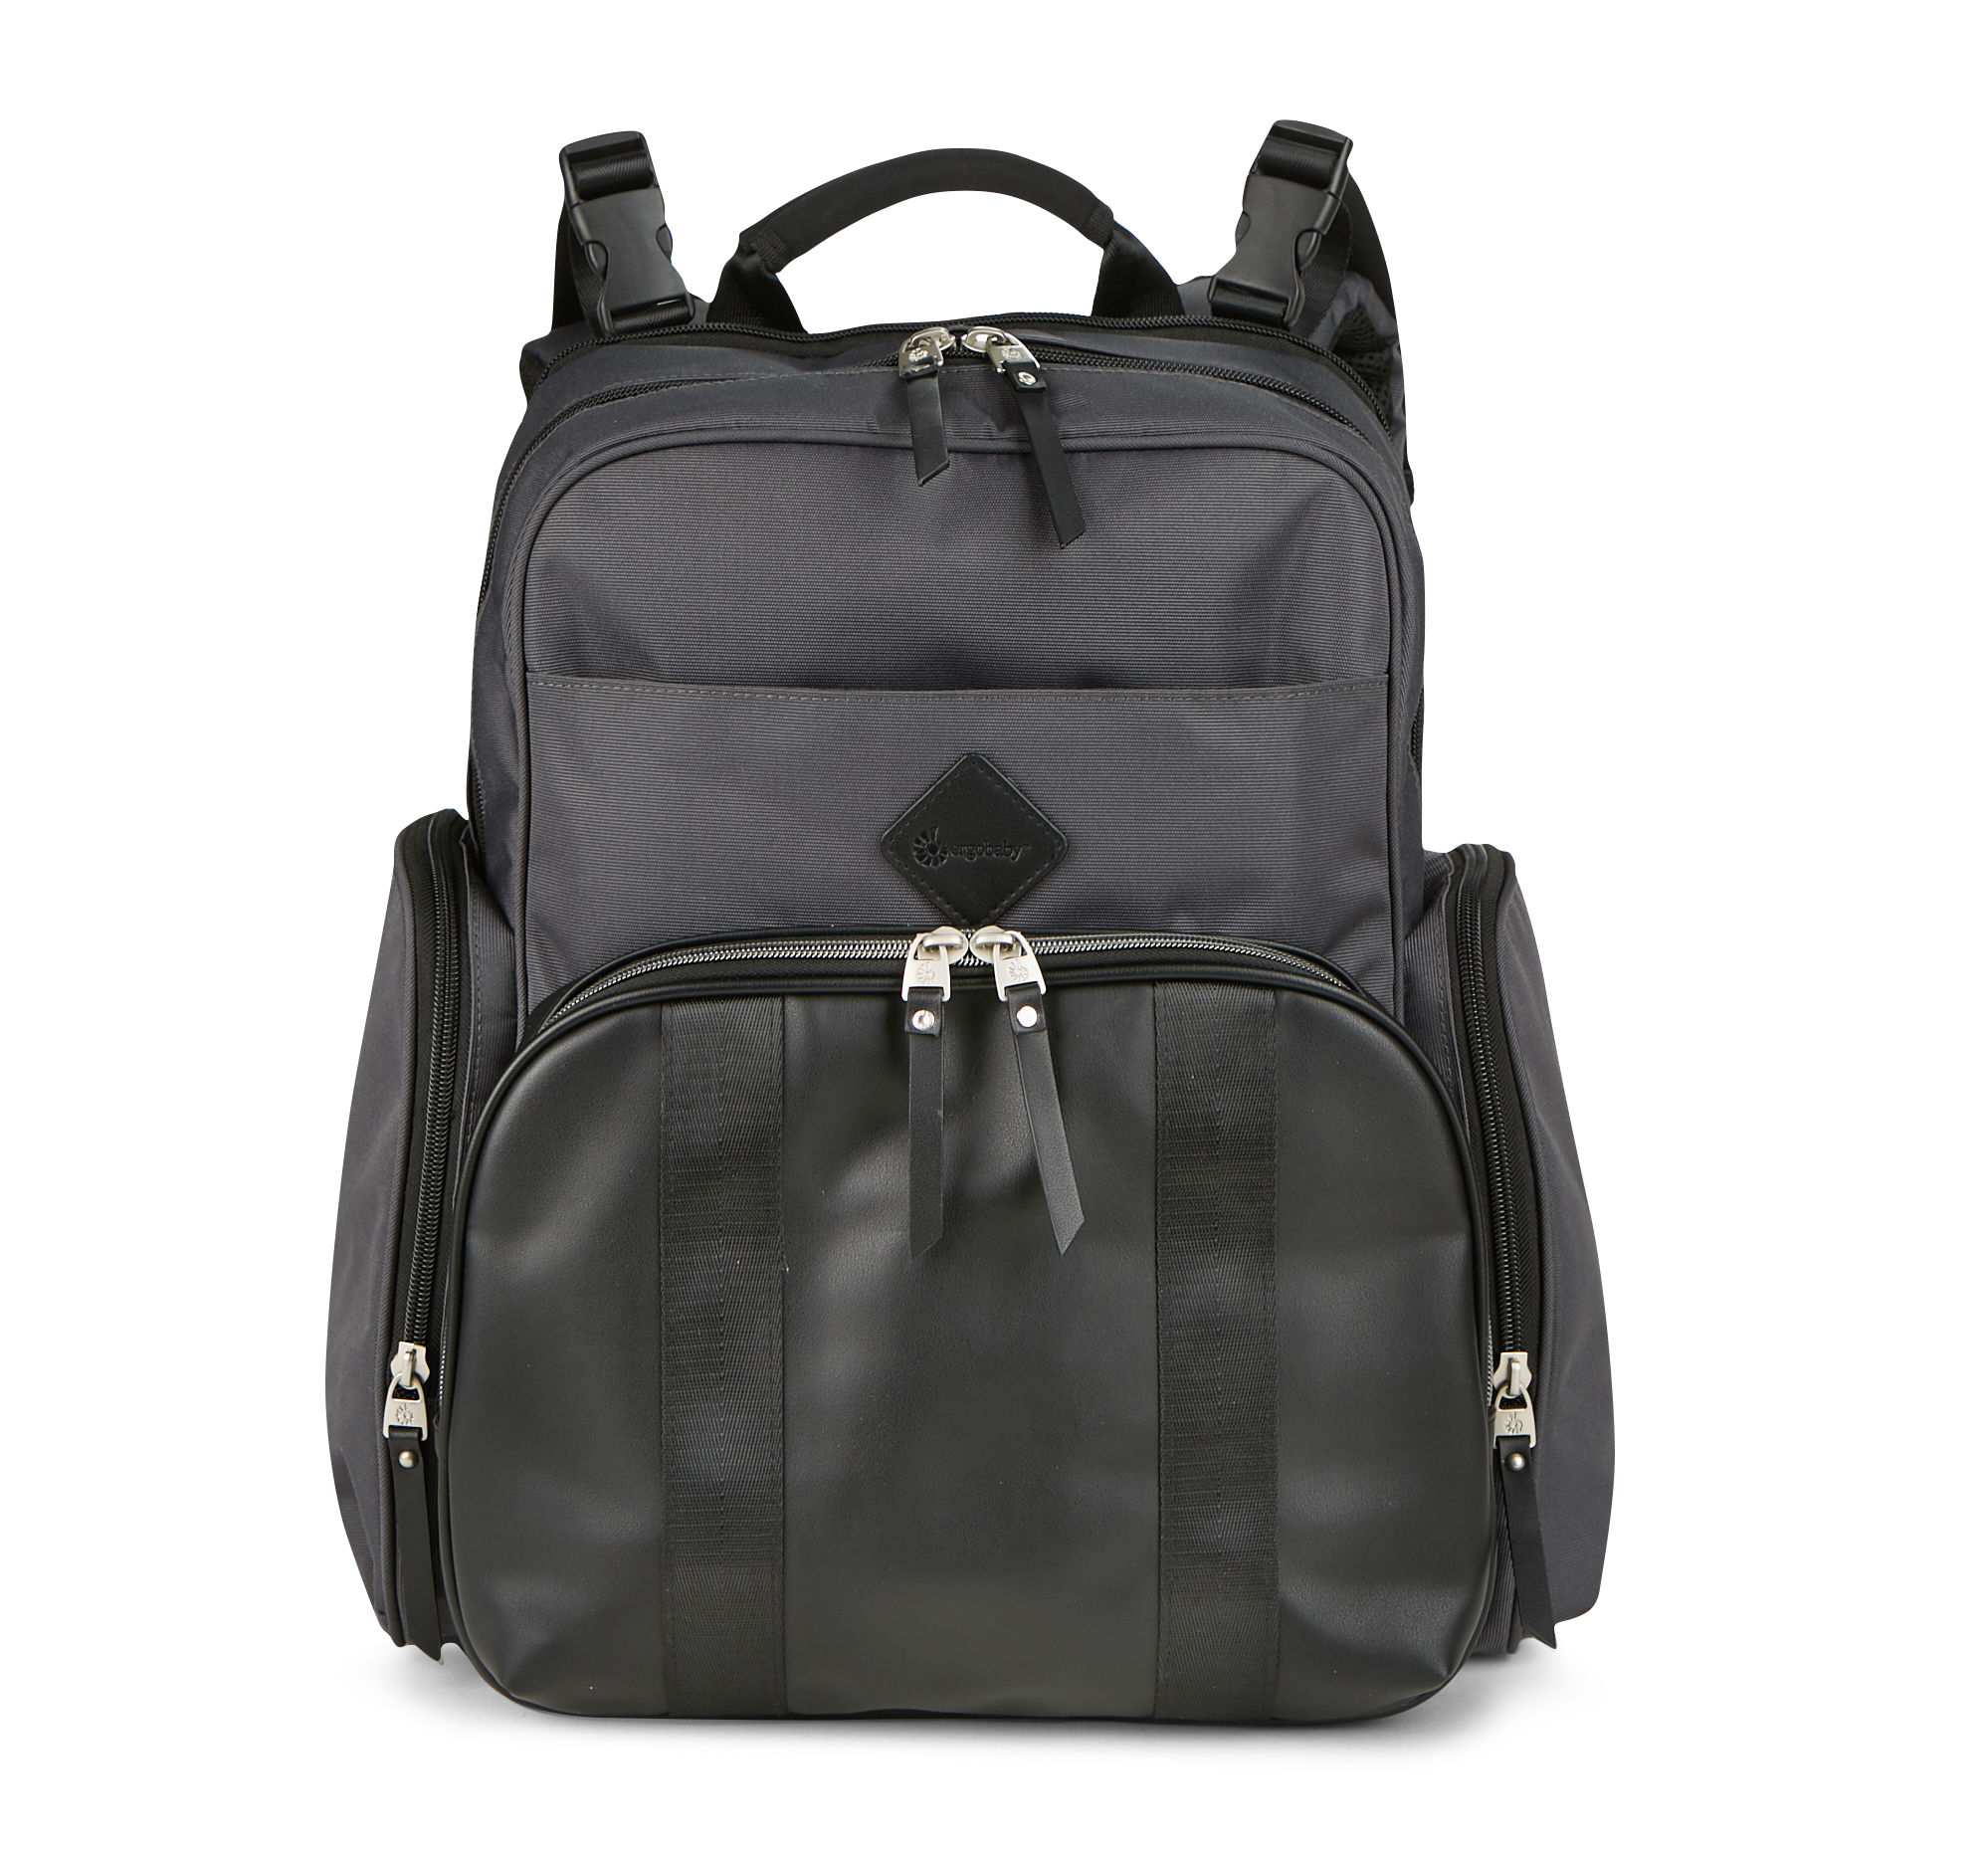 Ergobaby Adjustable Shoulder Strap Inside Pockets Backpack Diaper Bags, Black - image 1 of 10